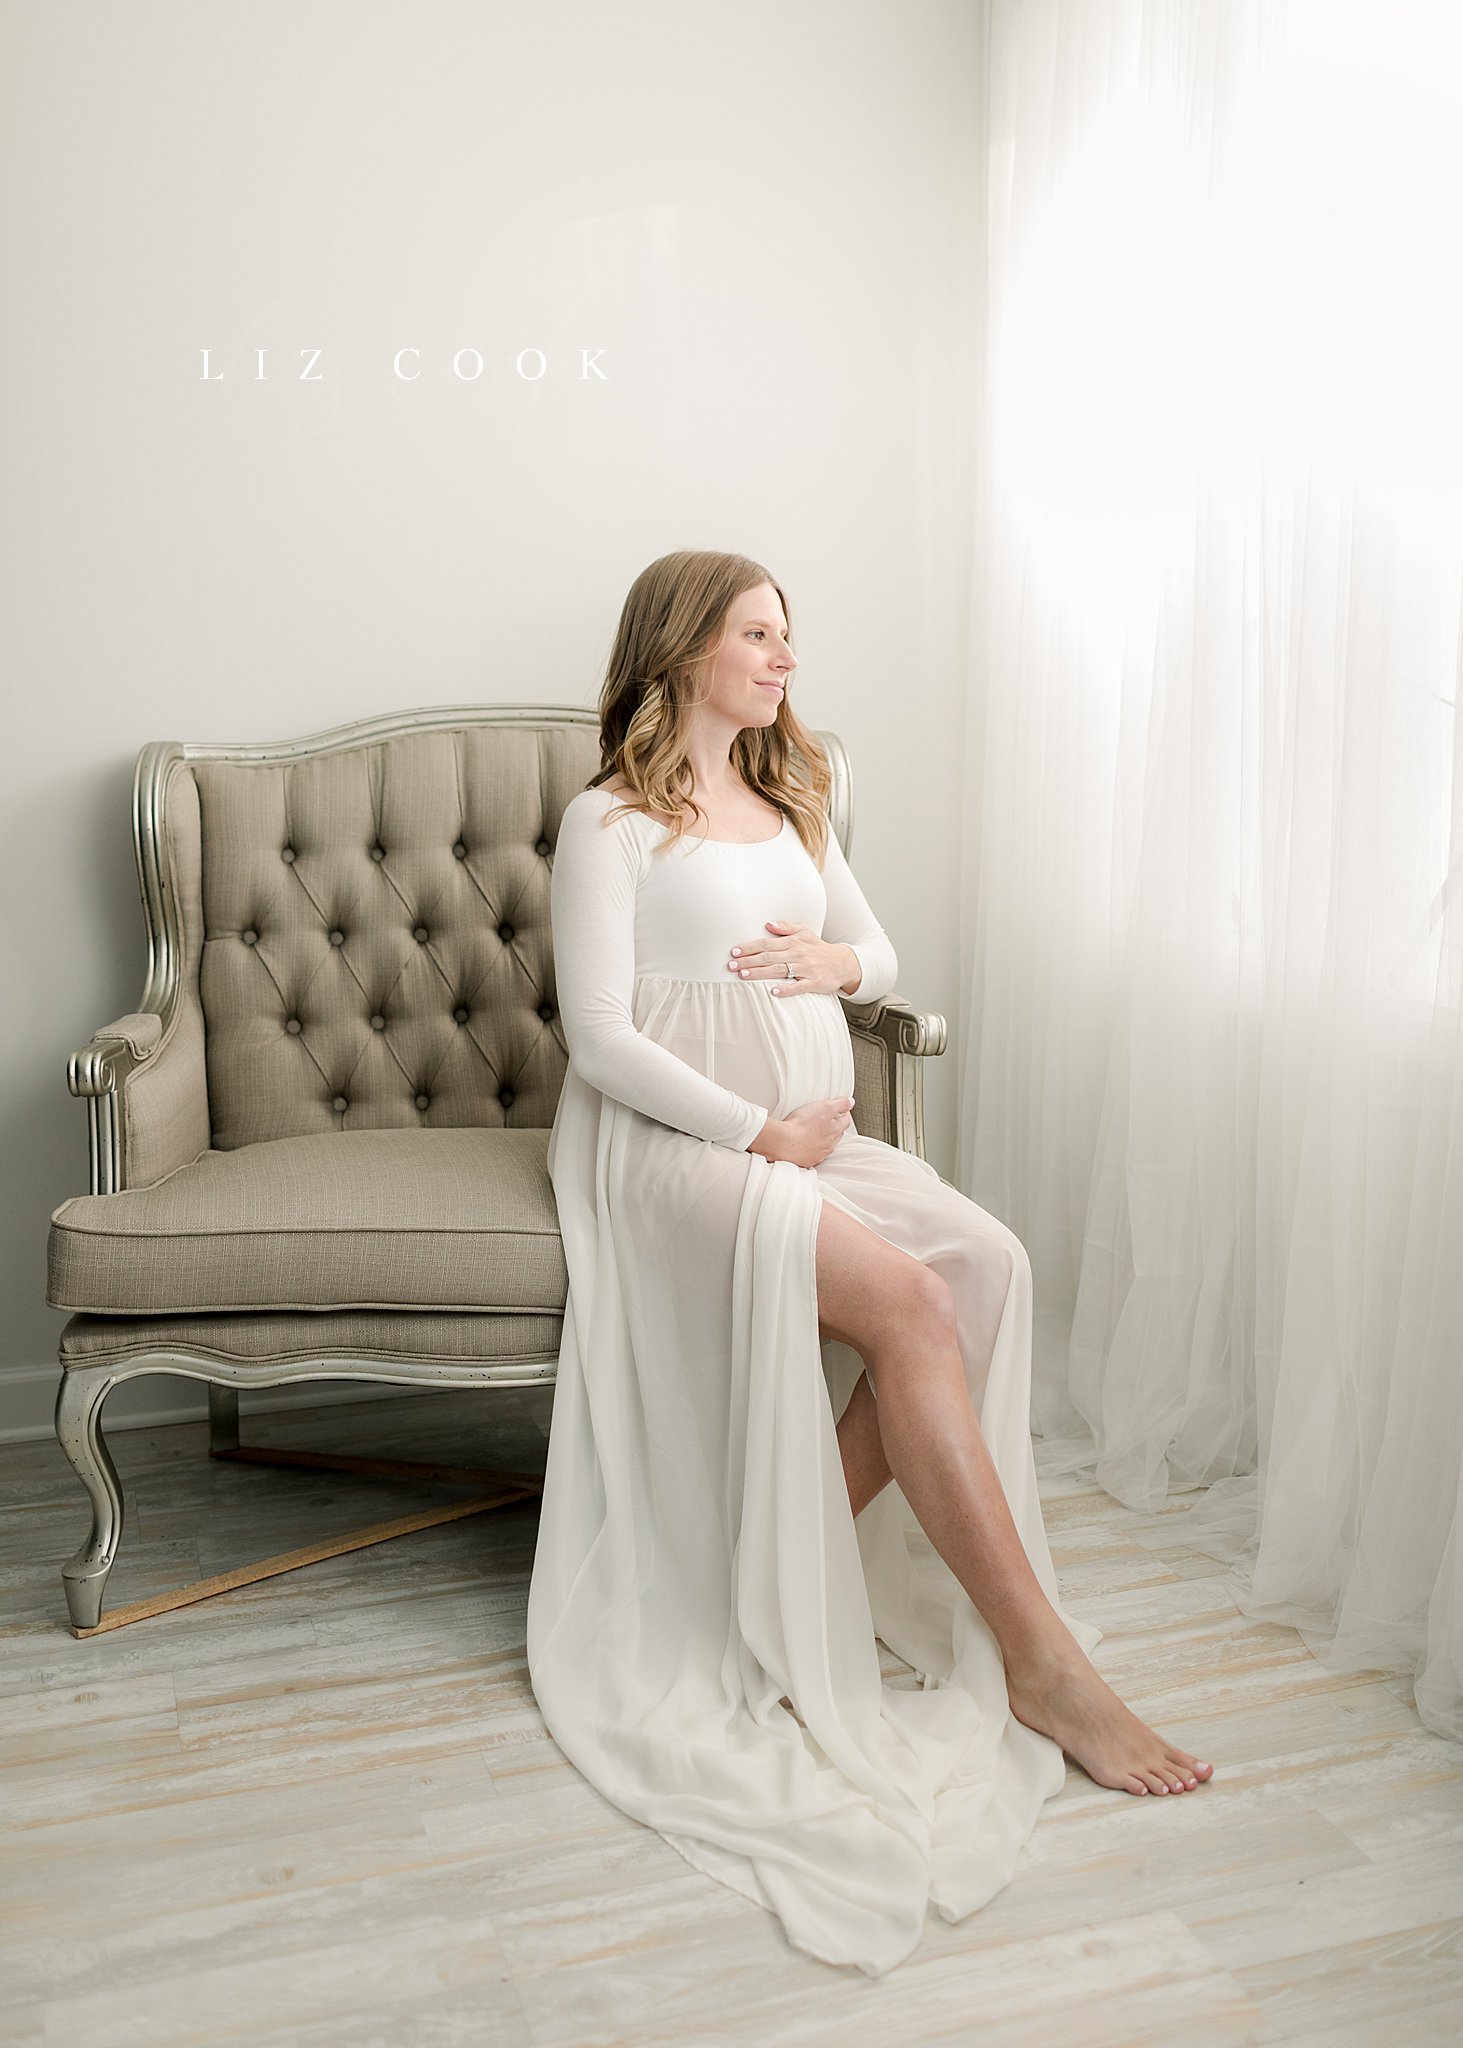  © 2022 Liz Cook Photography | www.liz-cook.com 